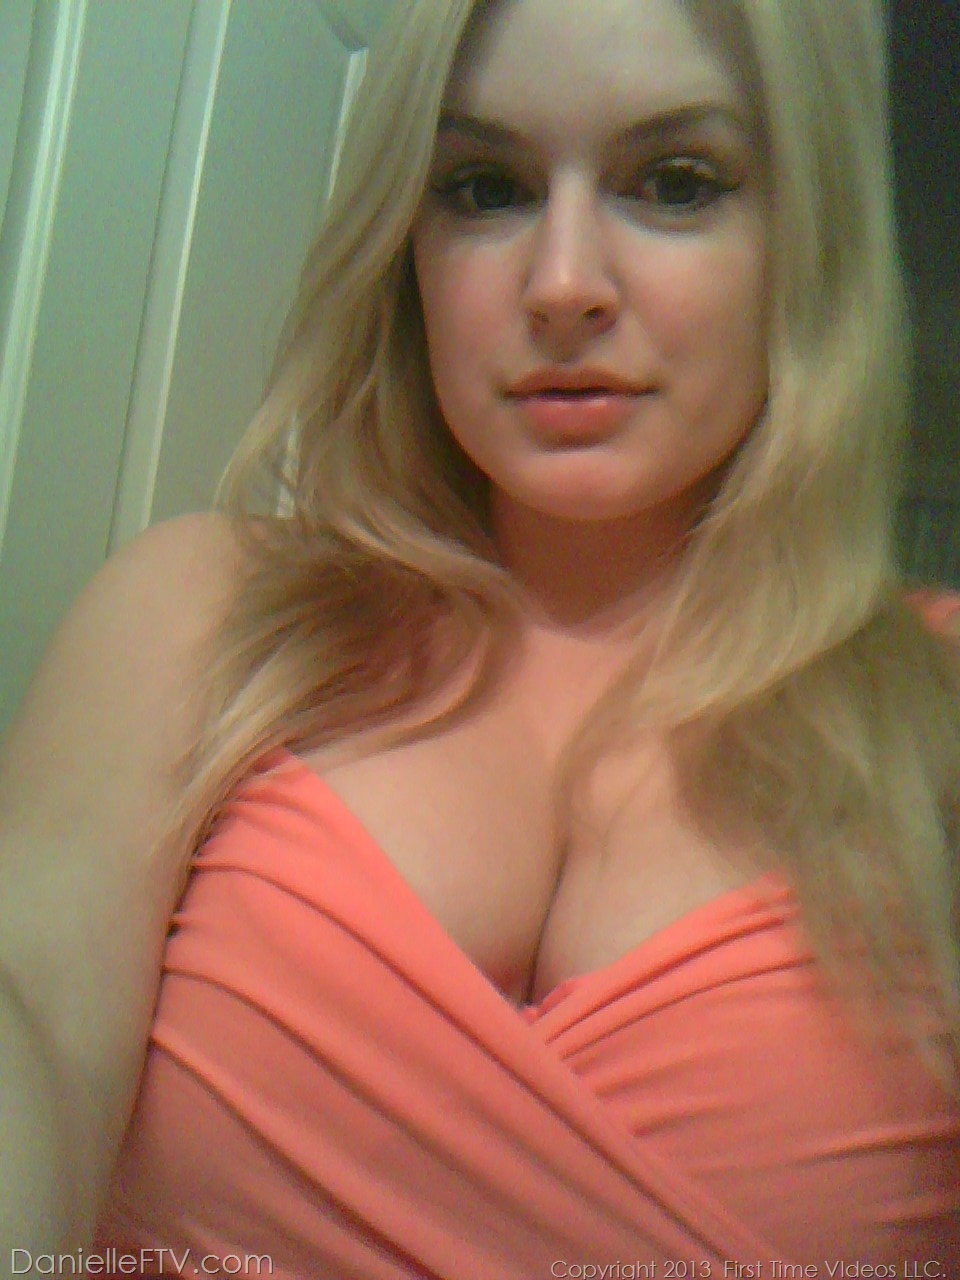 Blonde amateur Danielle Ftv dons numerous outfits for non nude selfies porn photo #422634183